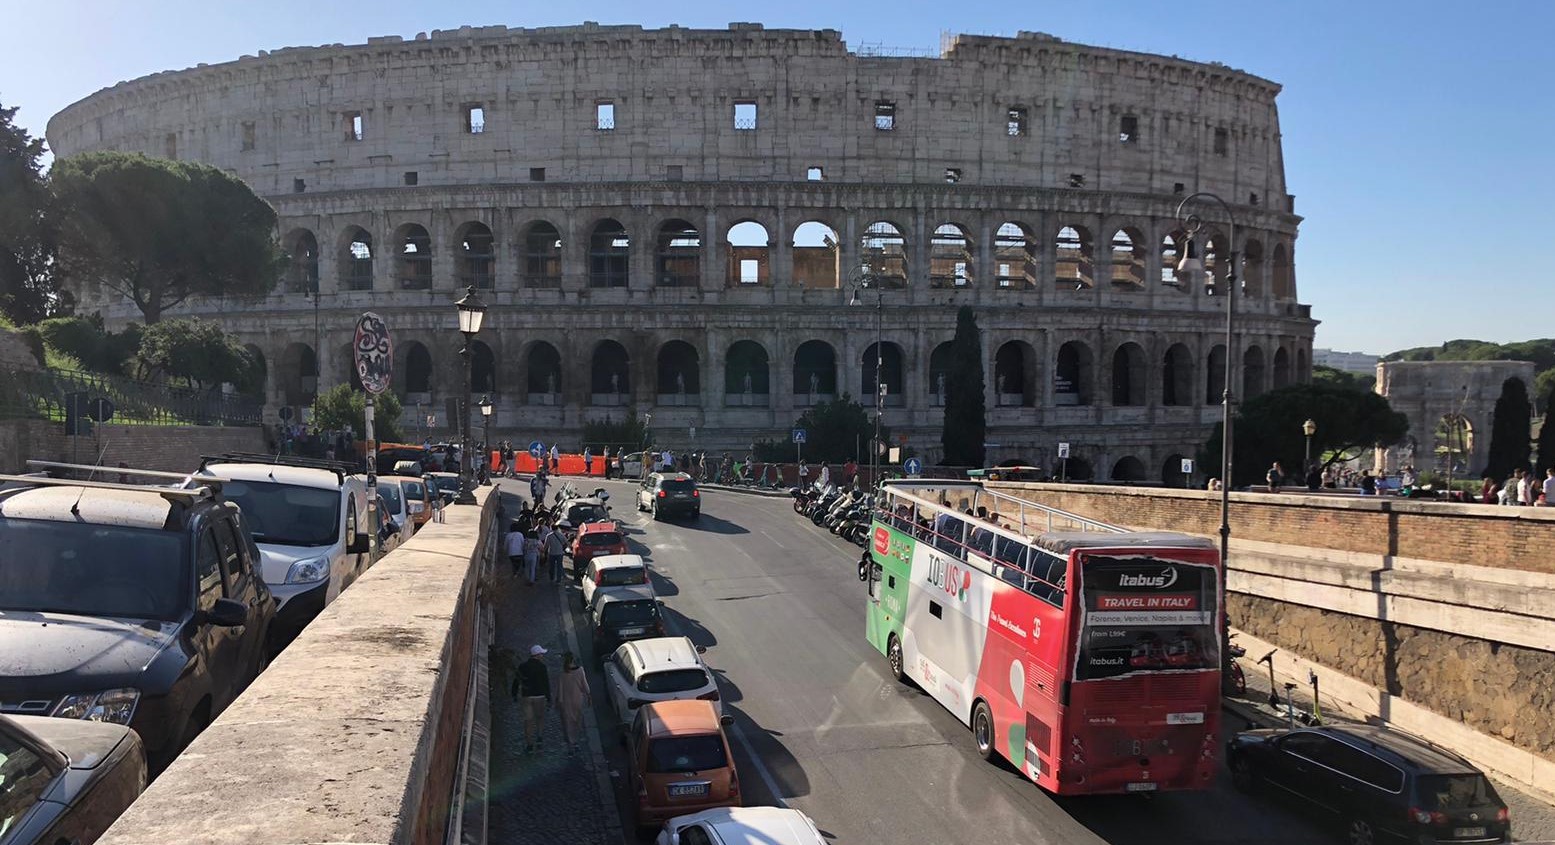 Entrada sin cola al Coliseo y tour panorámico en autobús